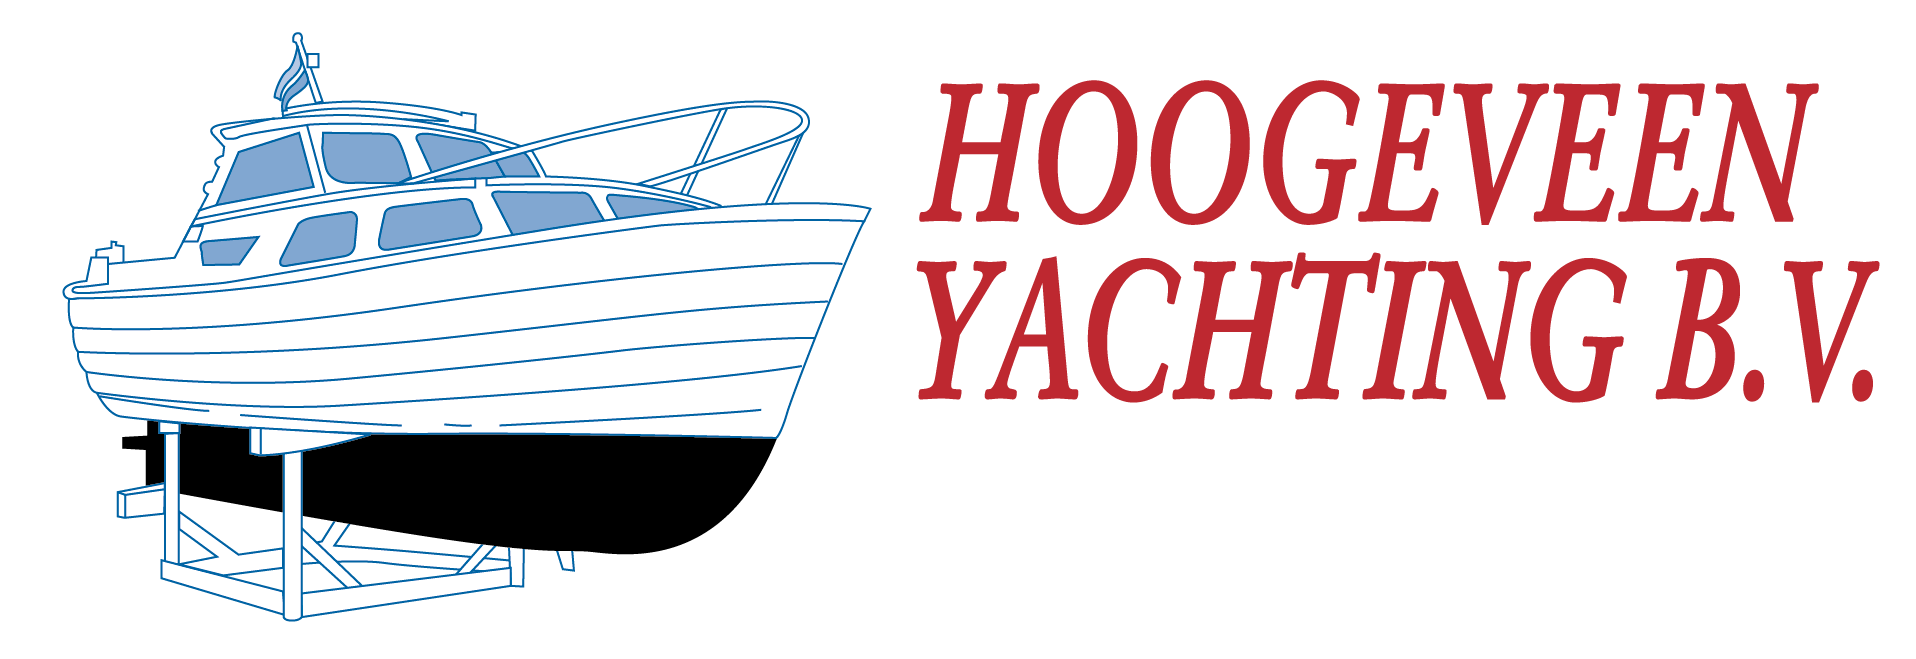 Hoogeveen Yachting